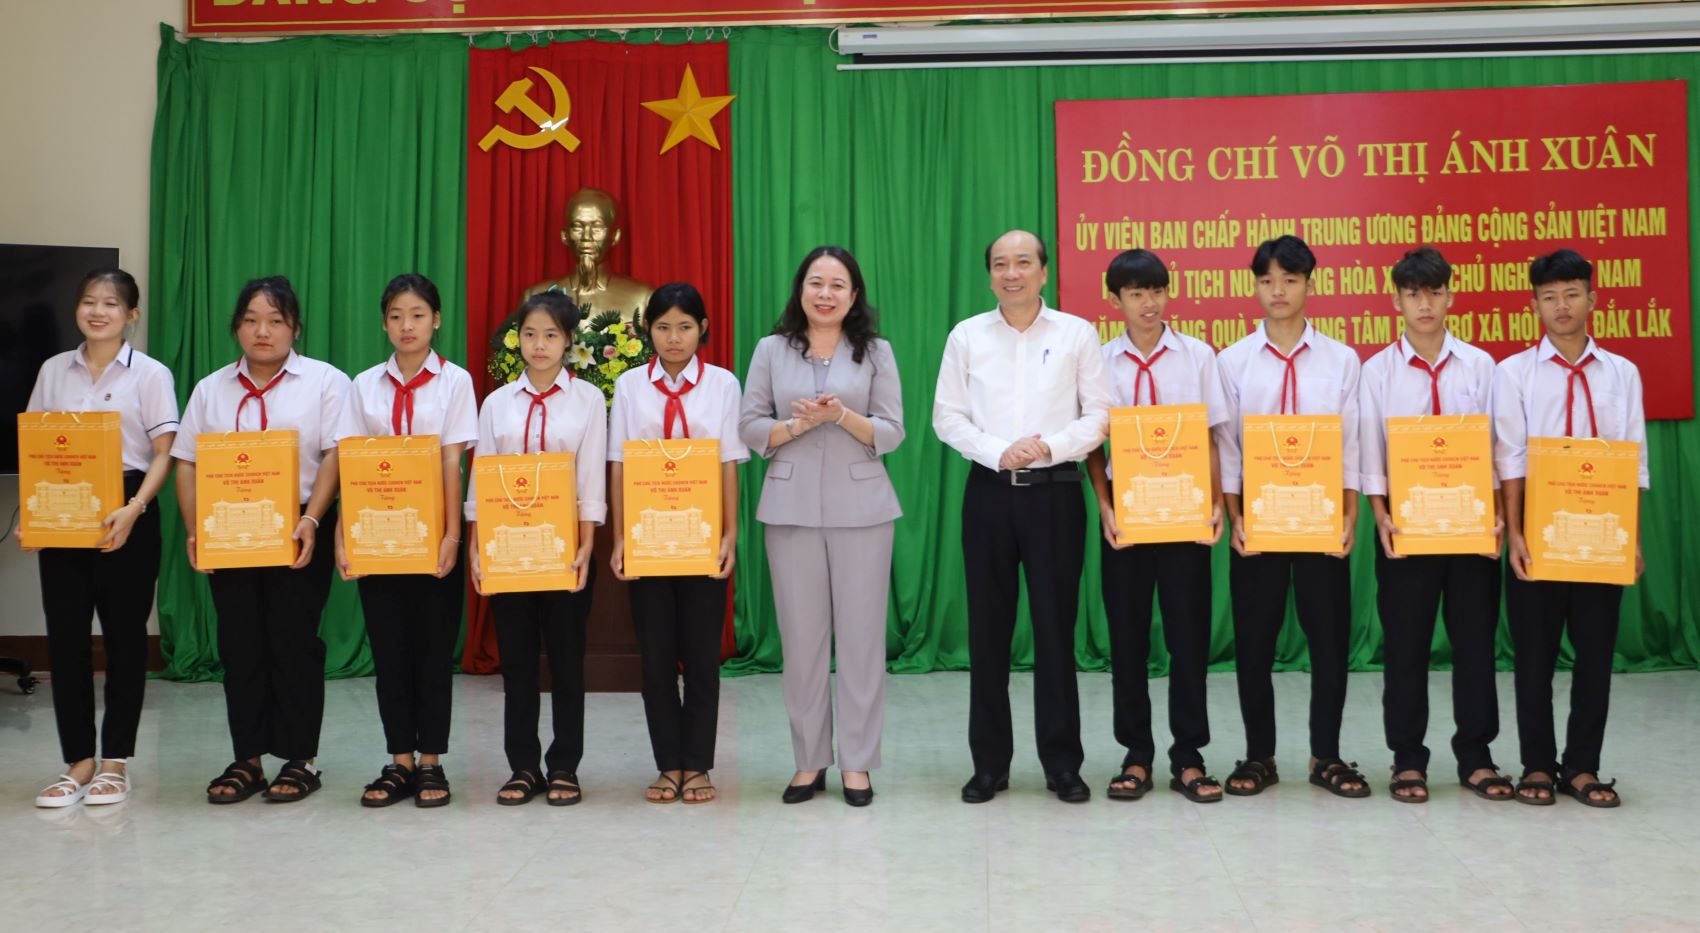 Phó Chủ tịch nước Võ Thị Ánh Xuân thăm và tặng quà Trung tâm Bảo trợ xã hội tỉnh Đắk Lắk